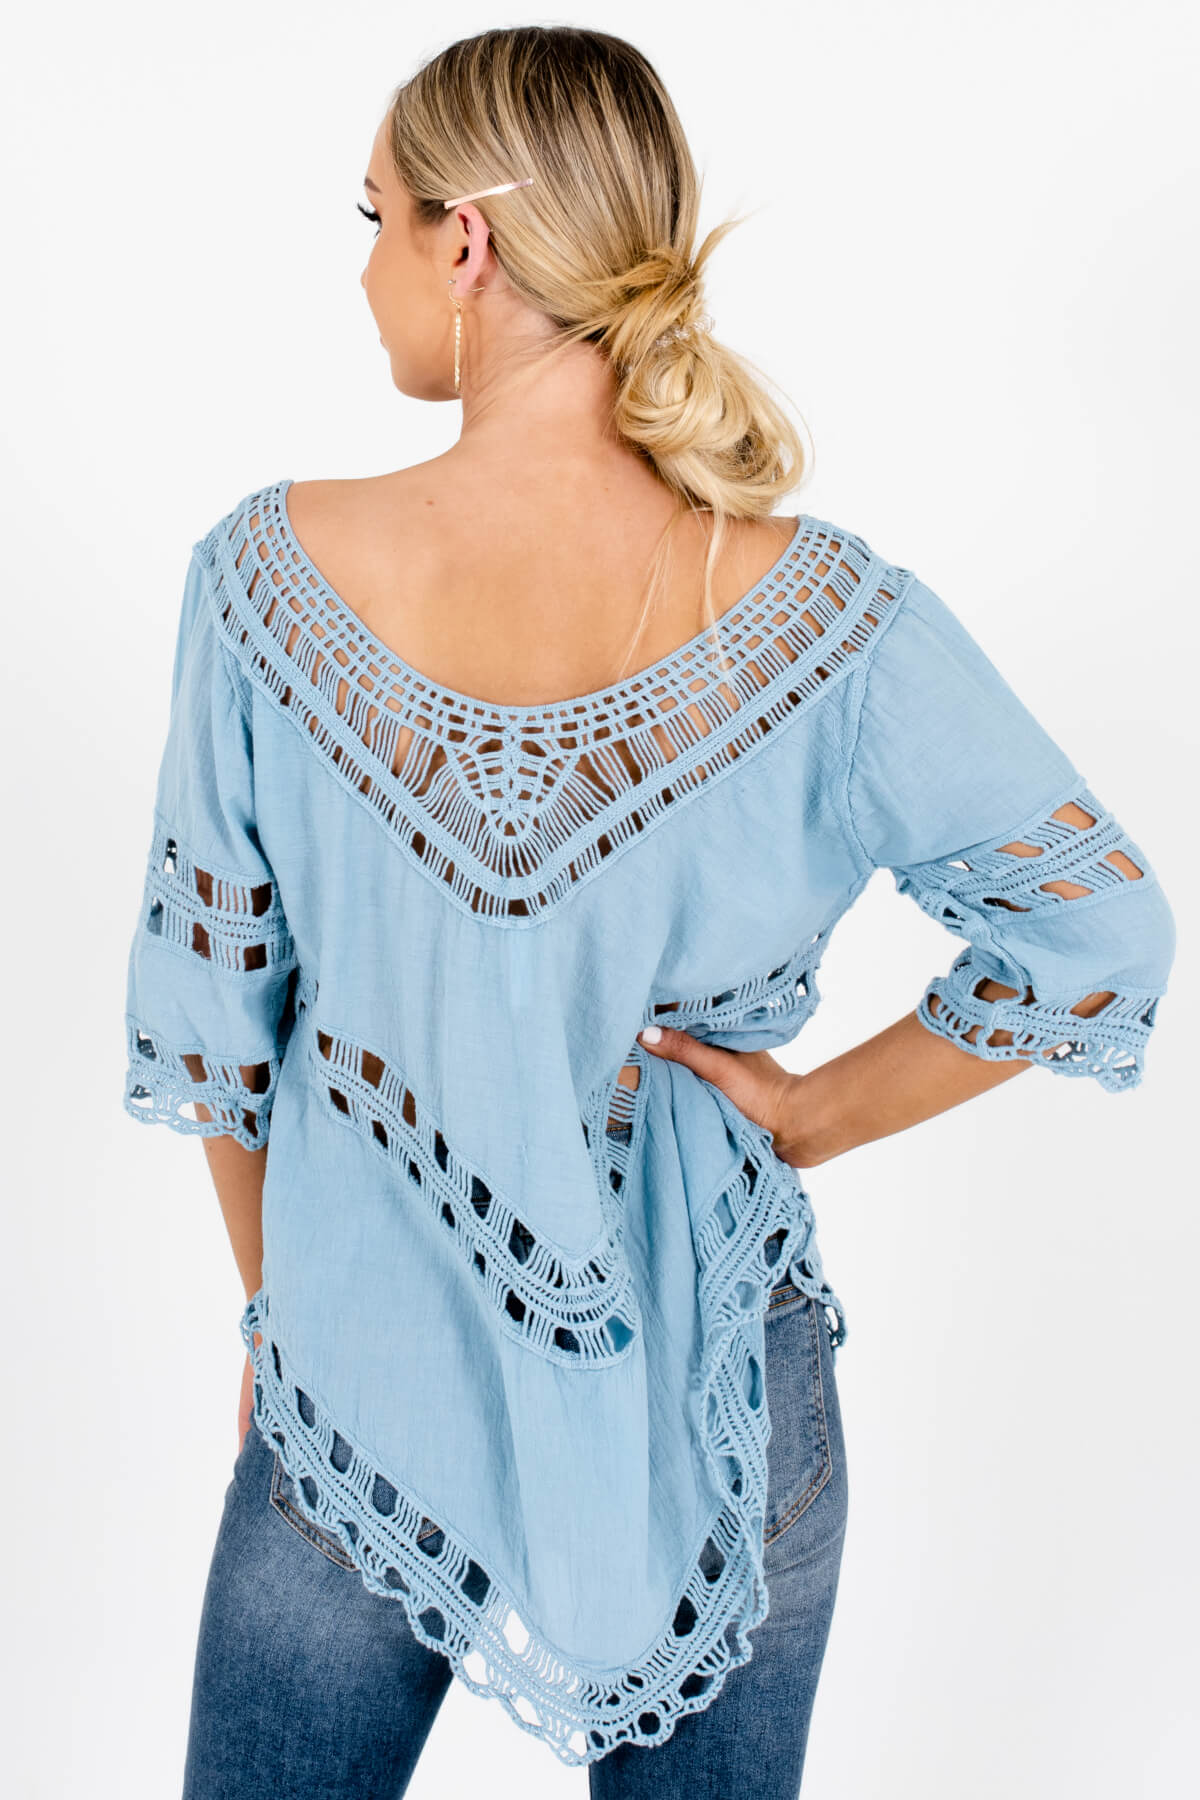 Women's Blue Crochet Detailed Boutique Tops